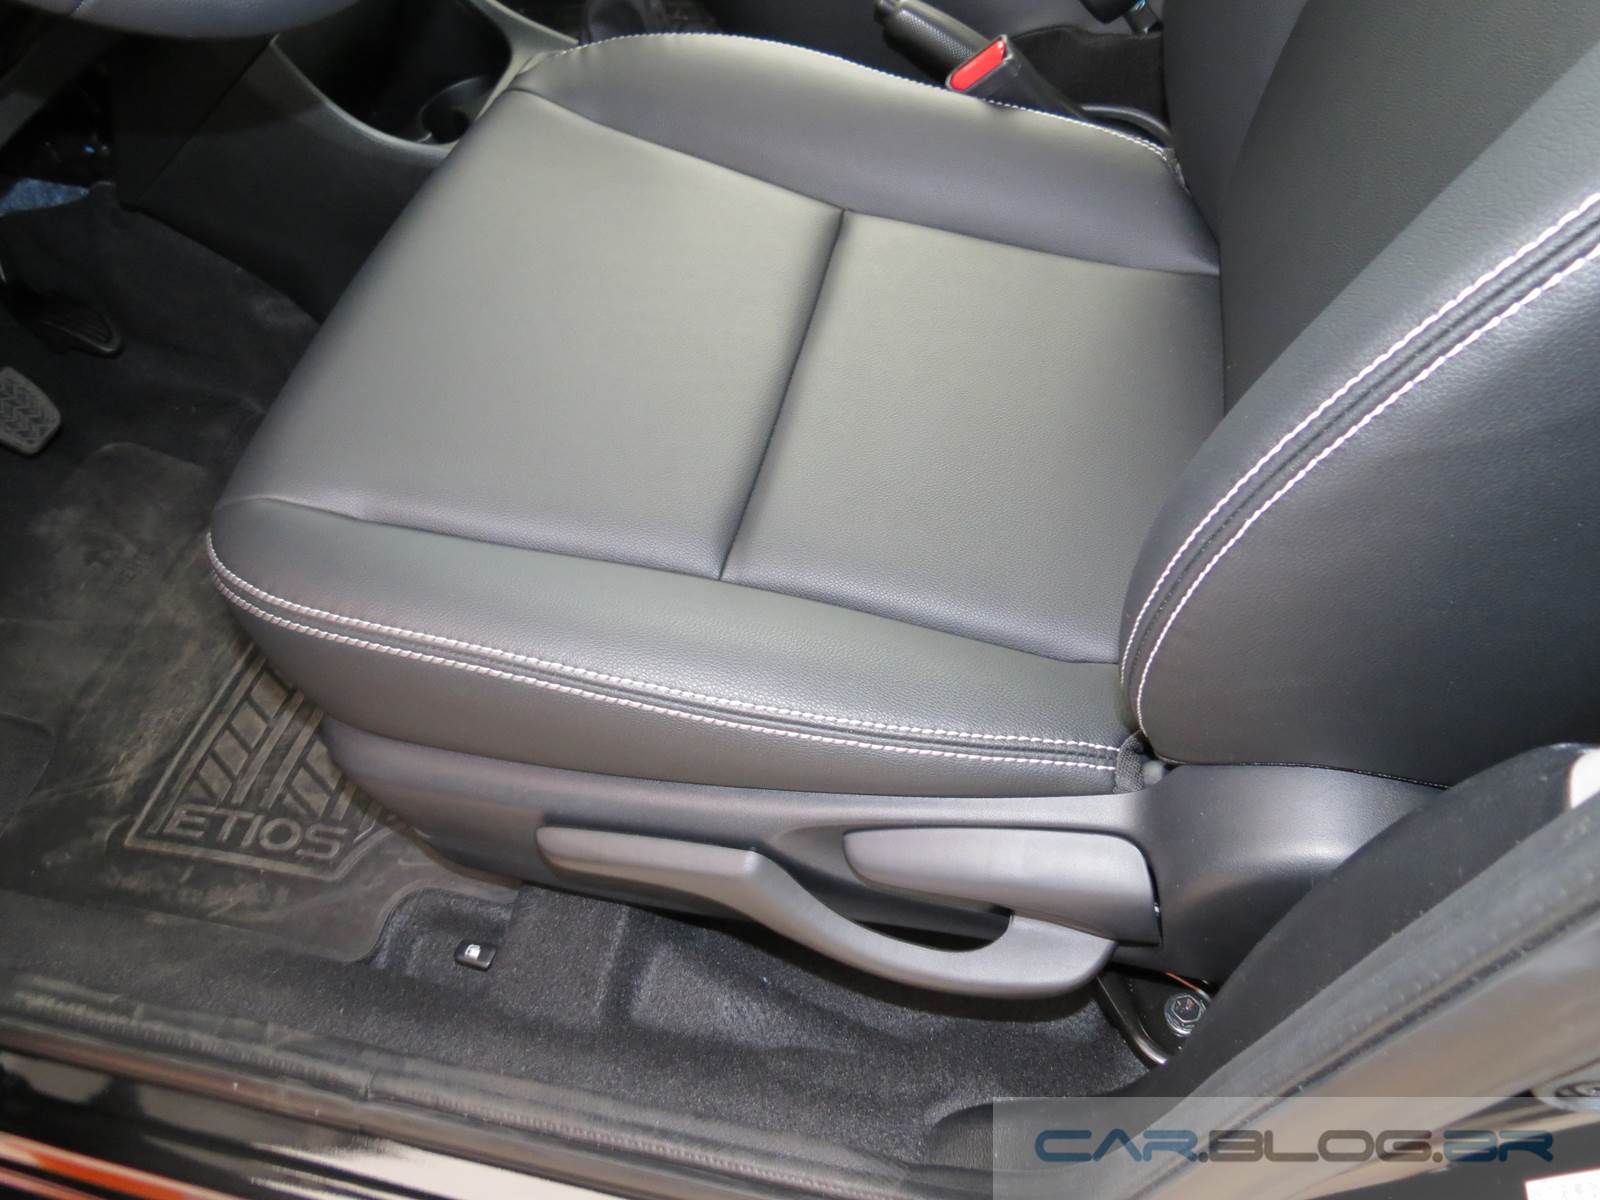 Toyota Etios XLS 1.5 2015 - interior